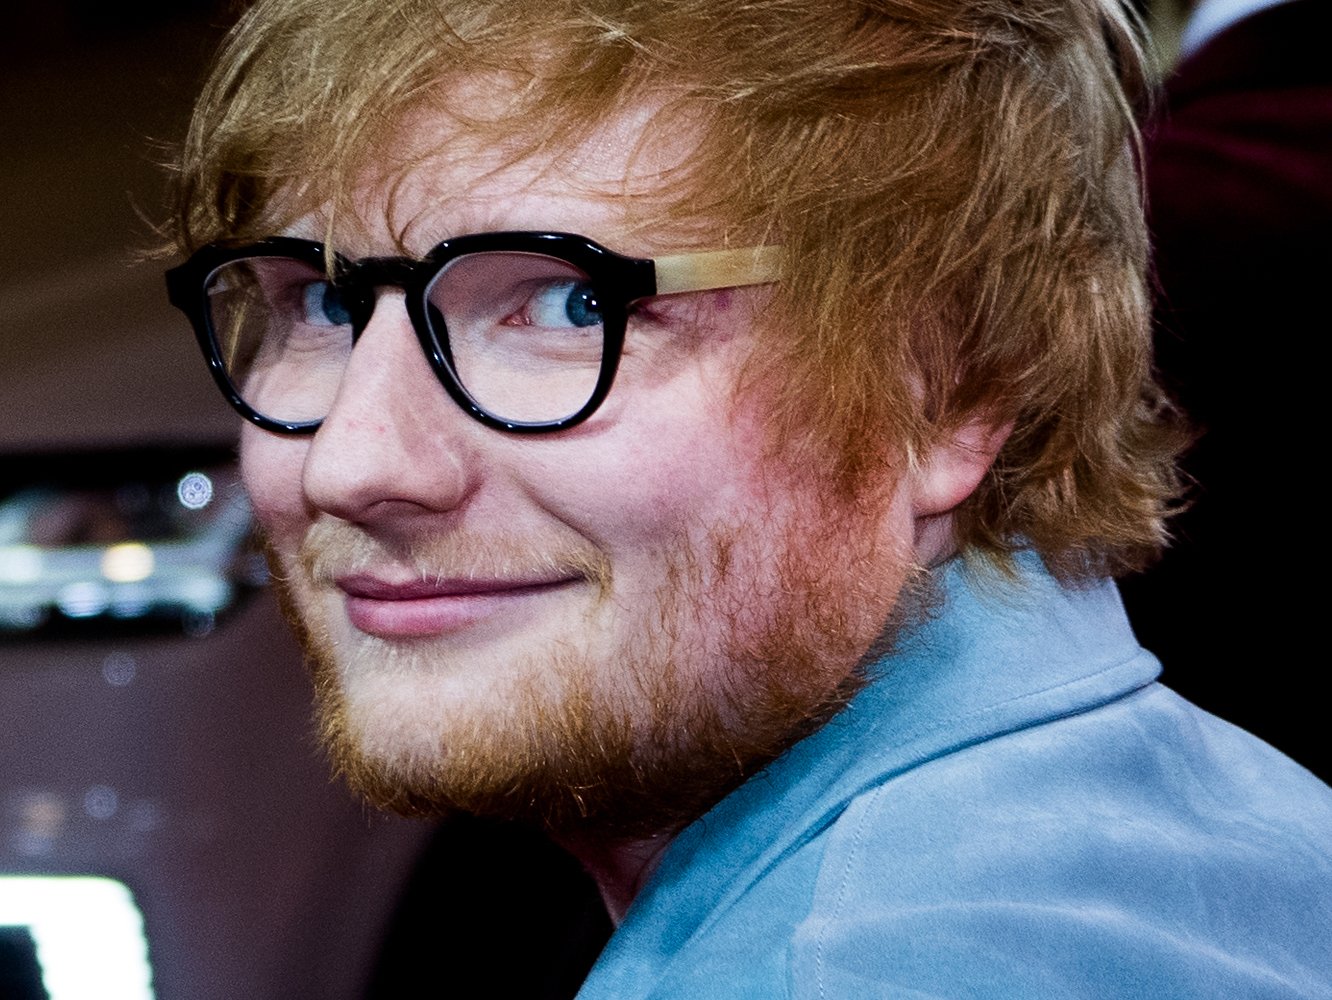  Tercer juicio por plagio para Ed Sheeran: ¿volverá a perder el cantante de nuevo?